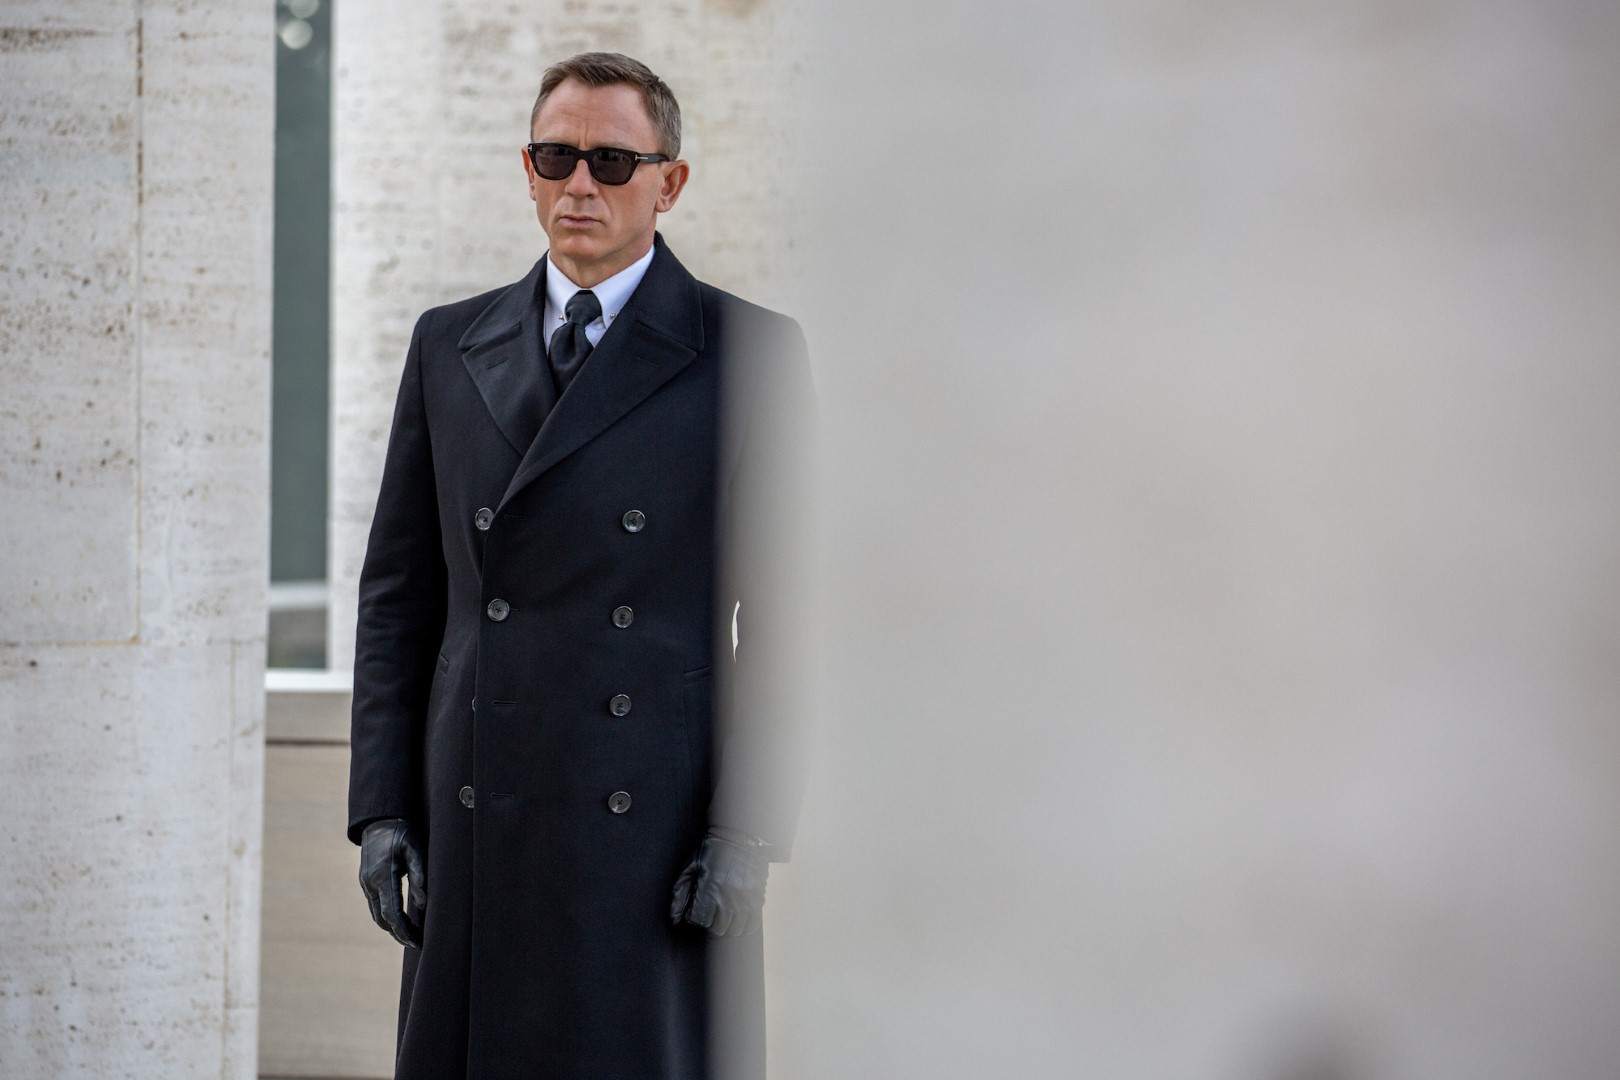 007 Spectre: Daniel Craig indossa gli occhiali da sole Snowdon di Tom Ford